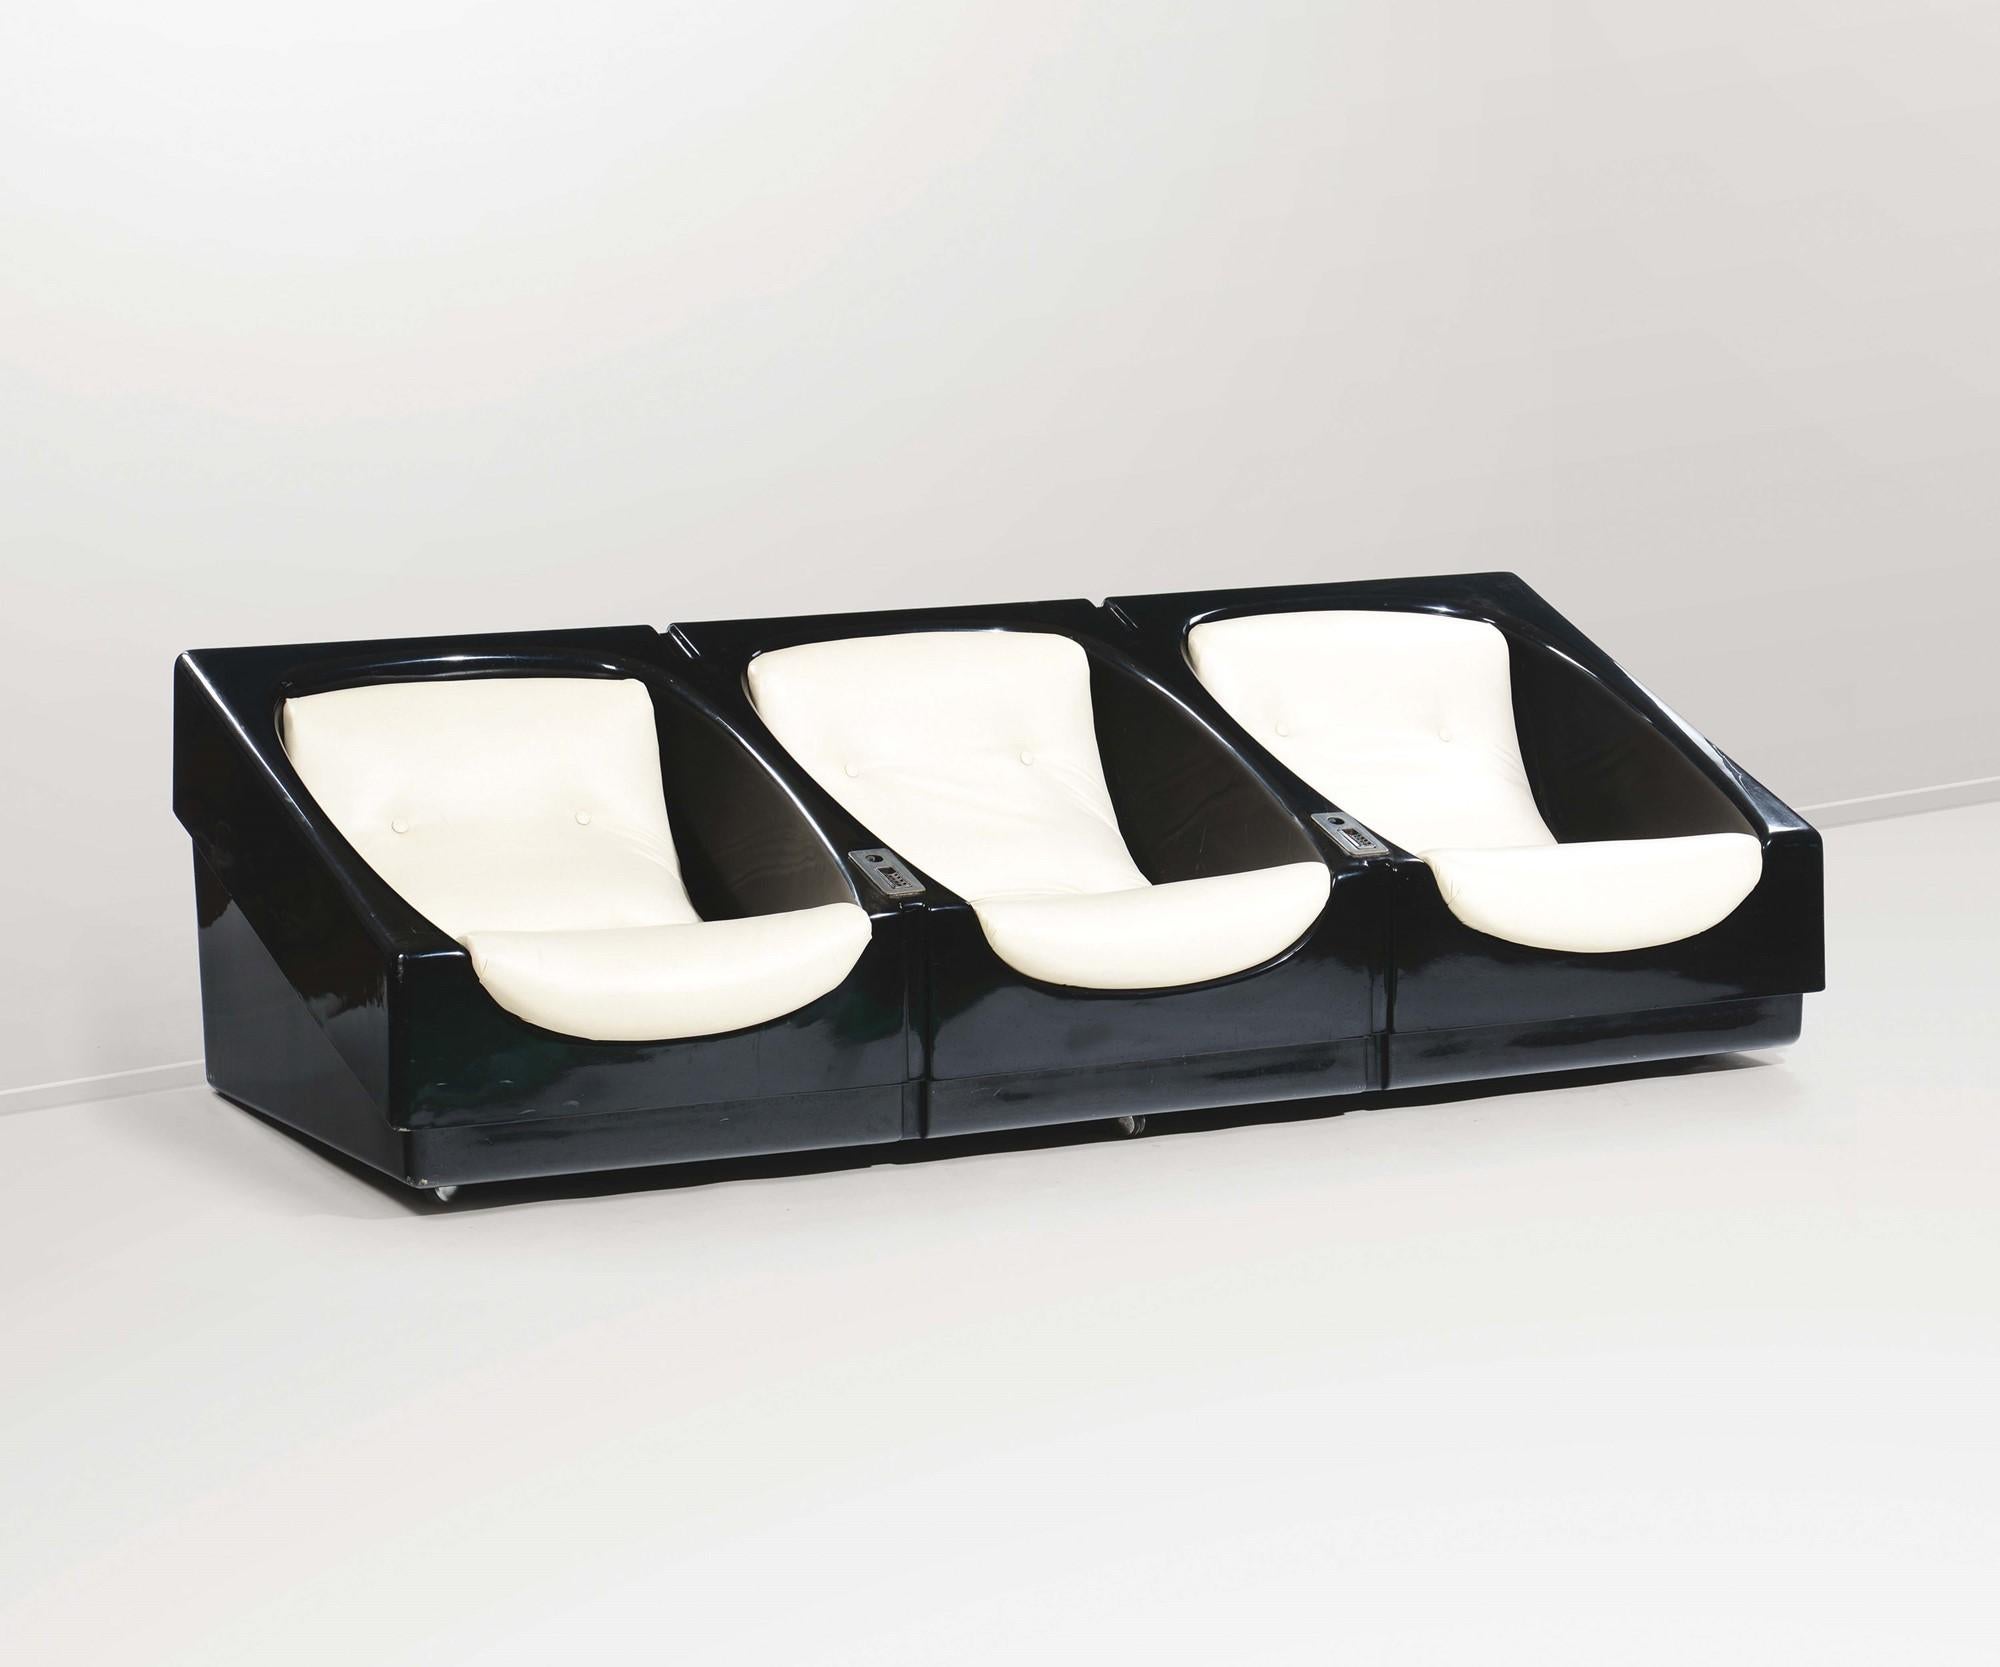 Un beau canapé à roulettes avec trois sièges, structure en fibre de verre avec revêtement en cuir conçu par Cesare Casati et produit par Comfort en circa 1966.